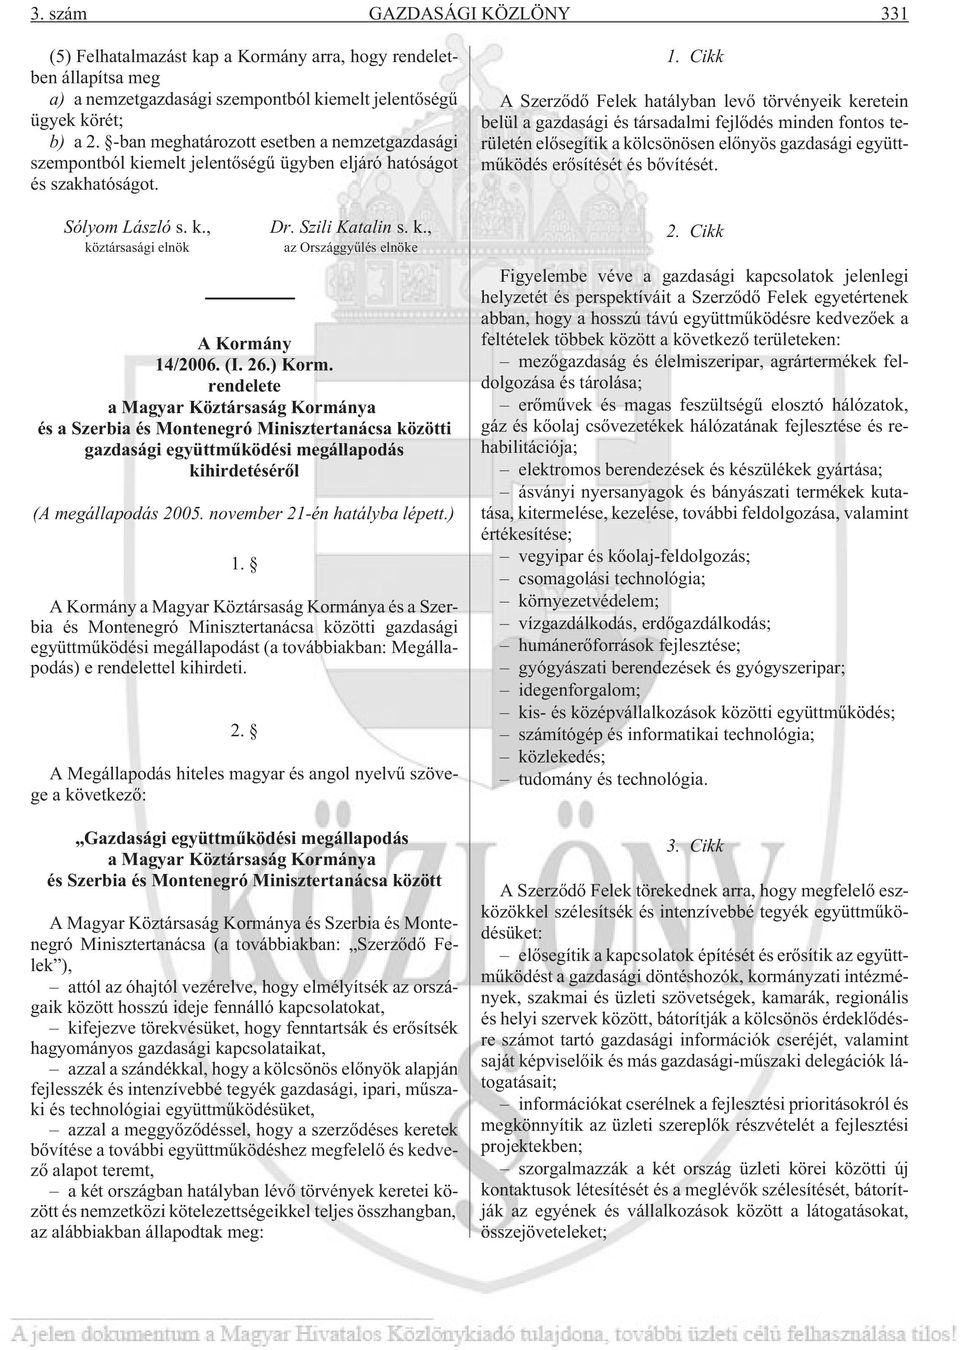 (I. 26.) Korm. rendelete a Magyar Köztársaság Kormánya és a Szerbia és Montenegró Minisztertanácsa közötti gazdasági együttmûködési megállapodás kihirdetésérõl (A megállapodás 2005.